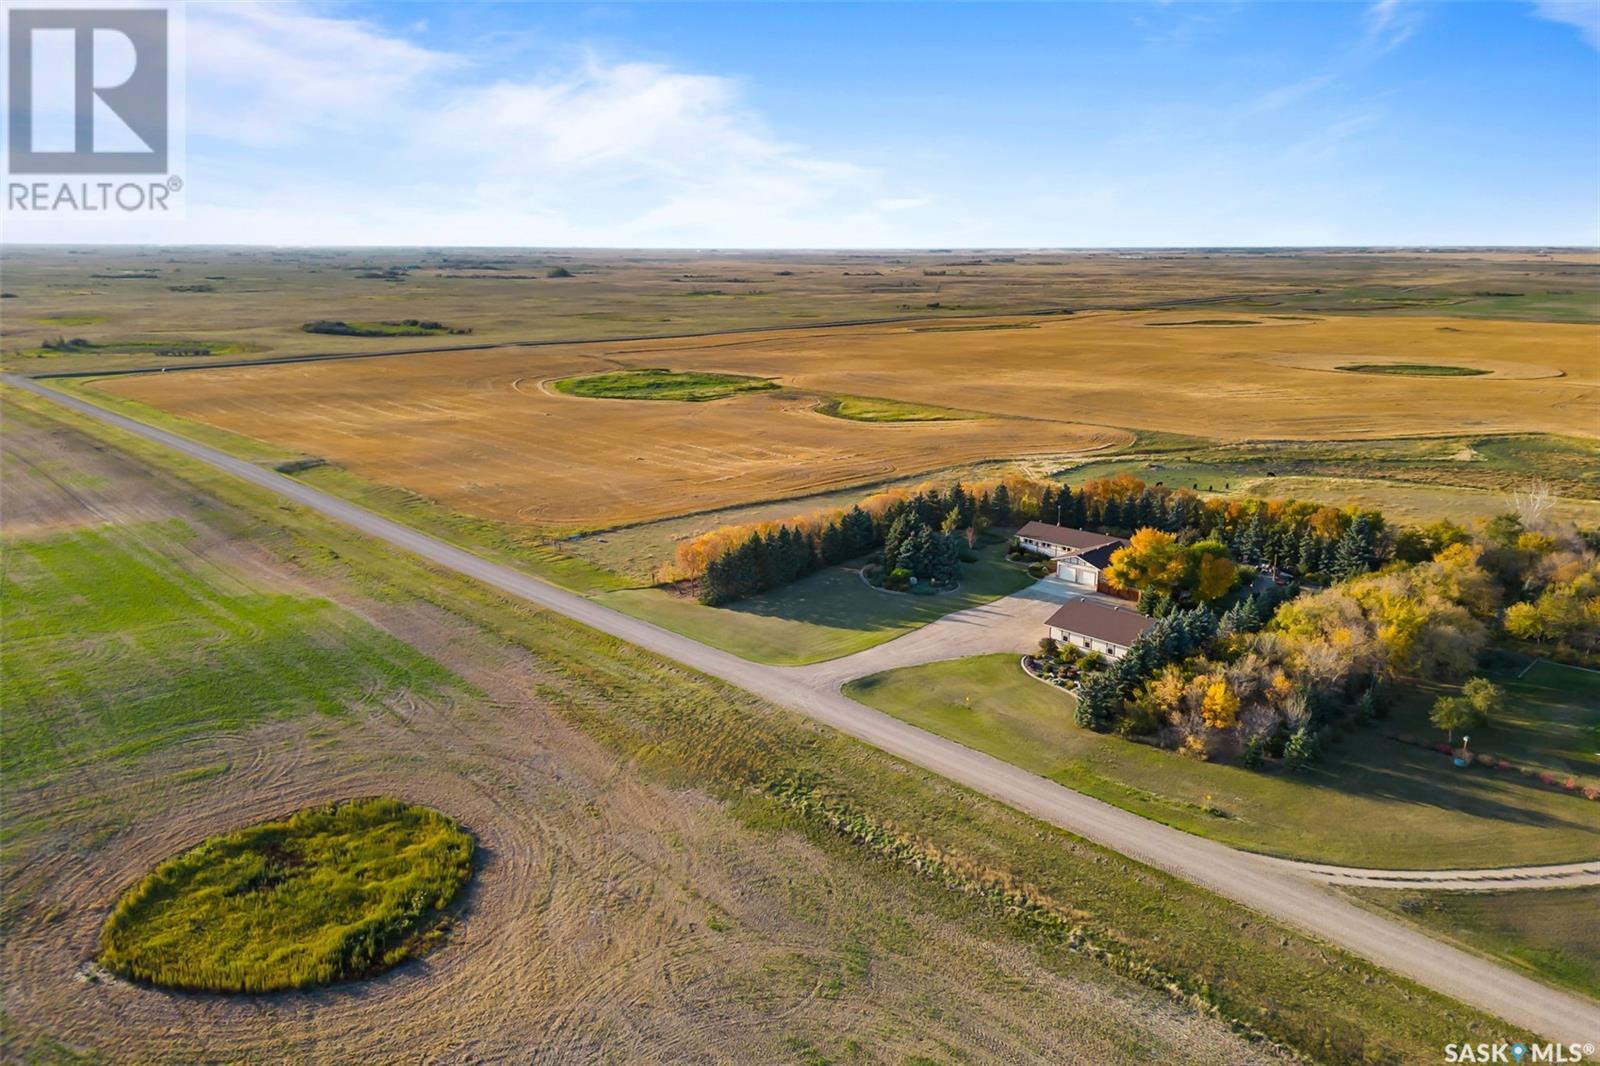 Lumsden / Bethune Prairie Oasis Acreage, dufferin rm no. 190, Saskatchewan